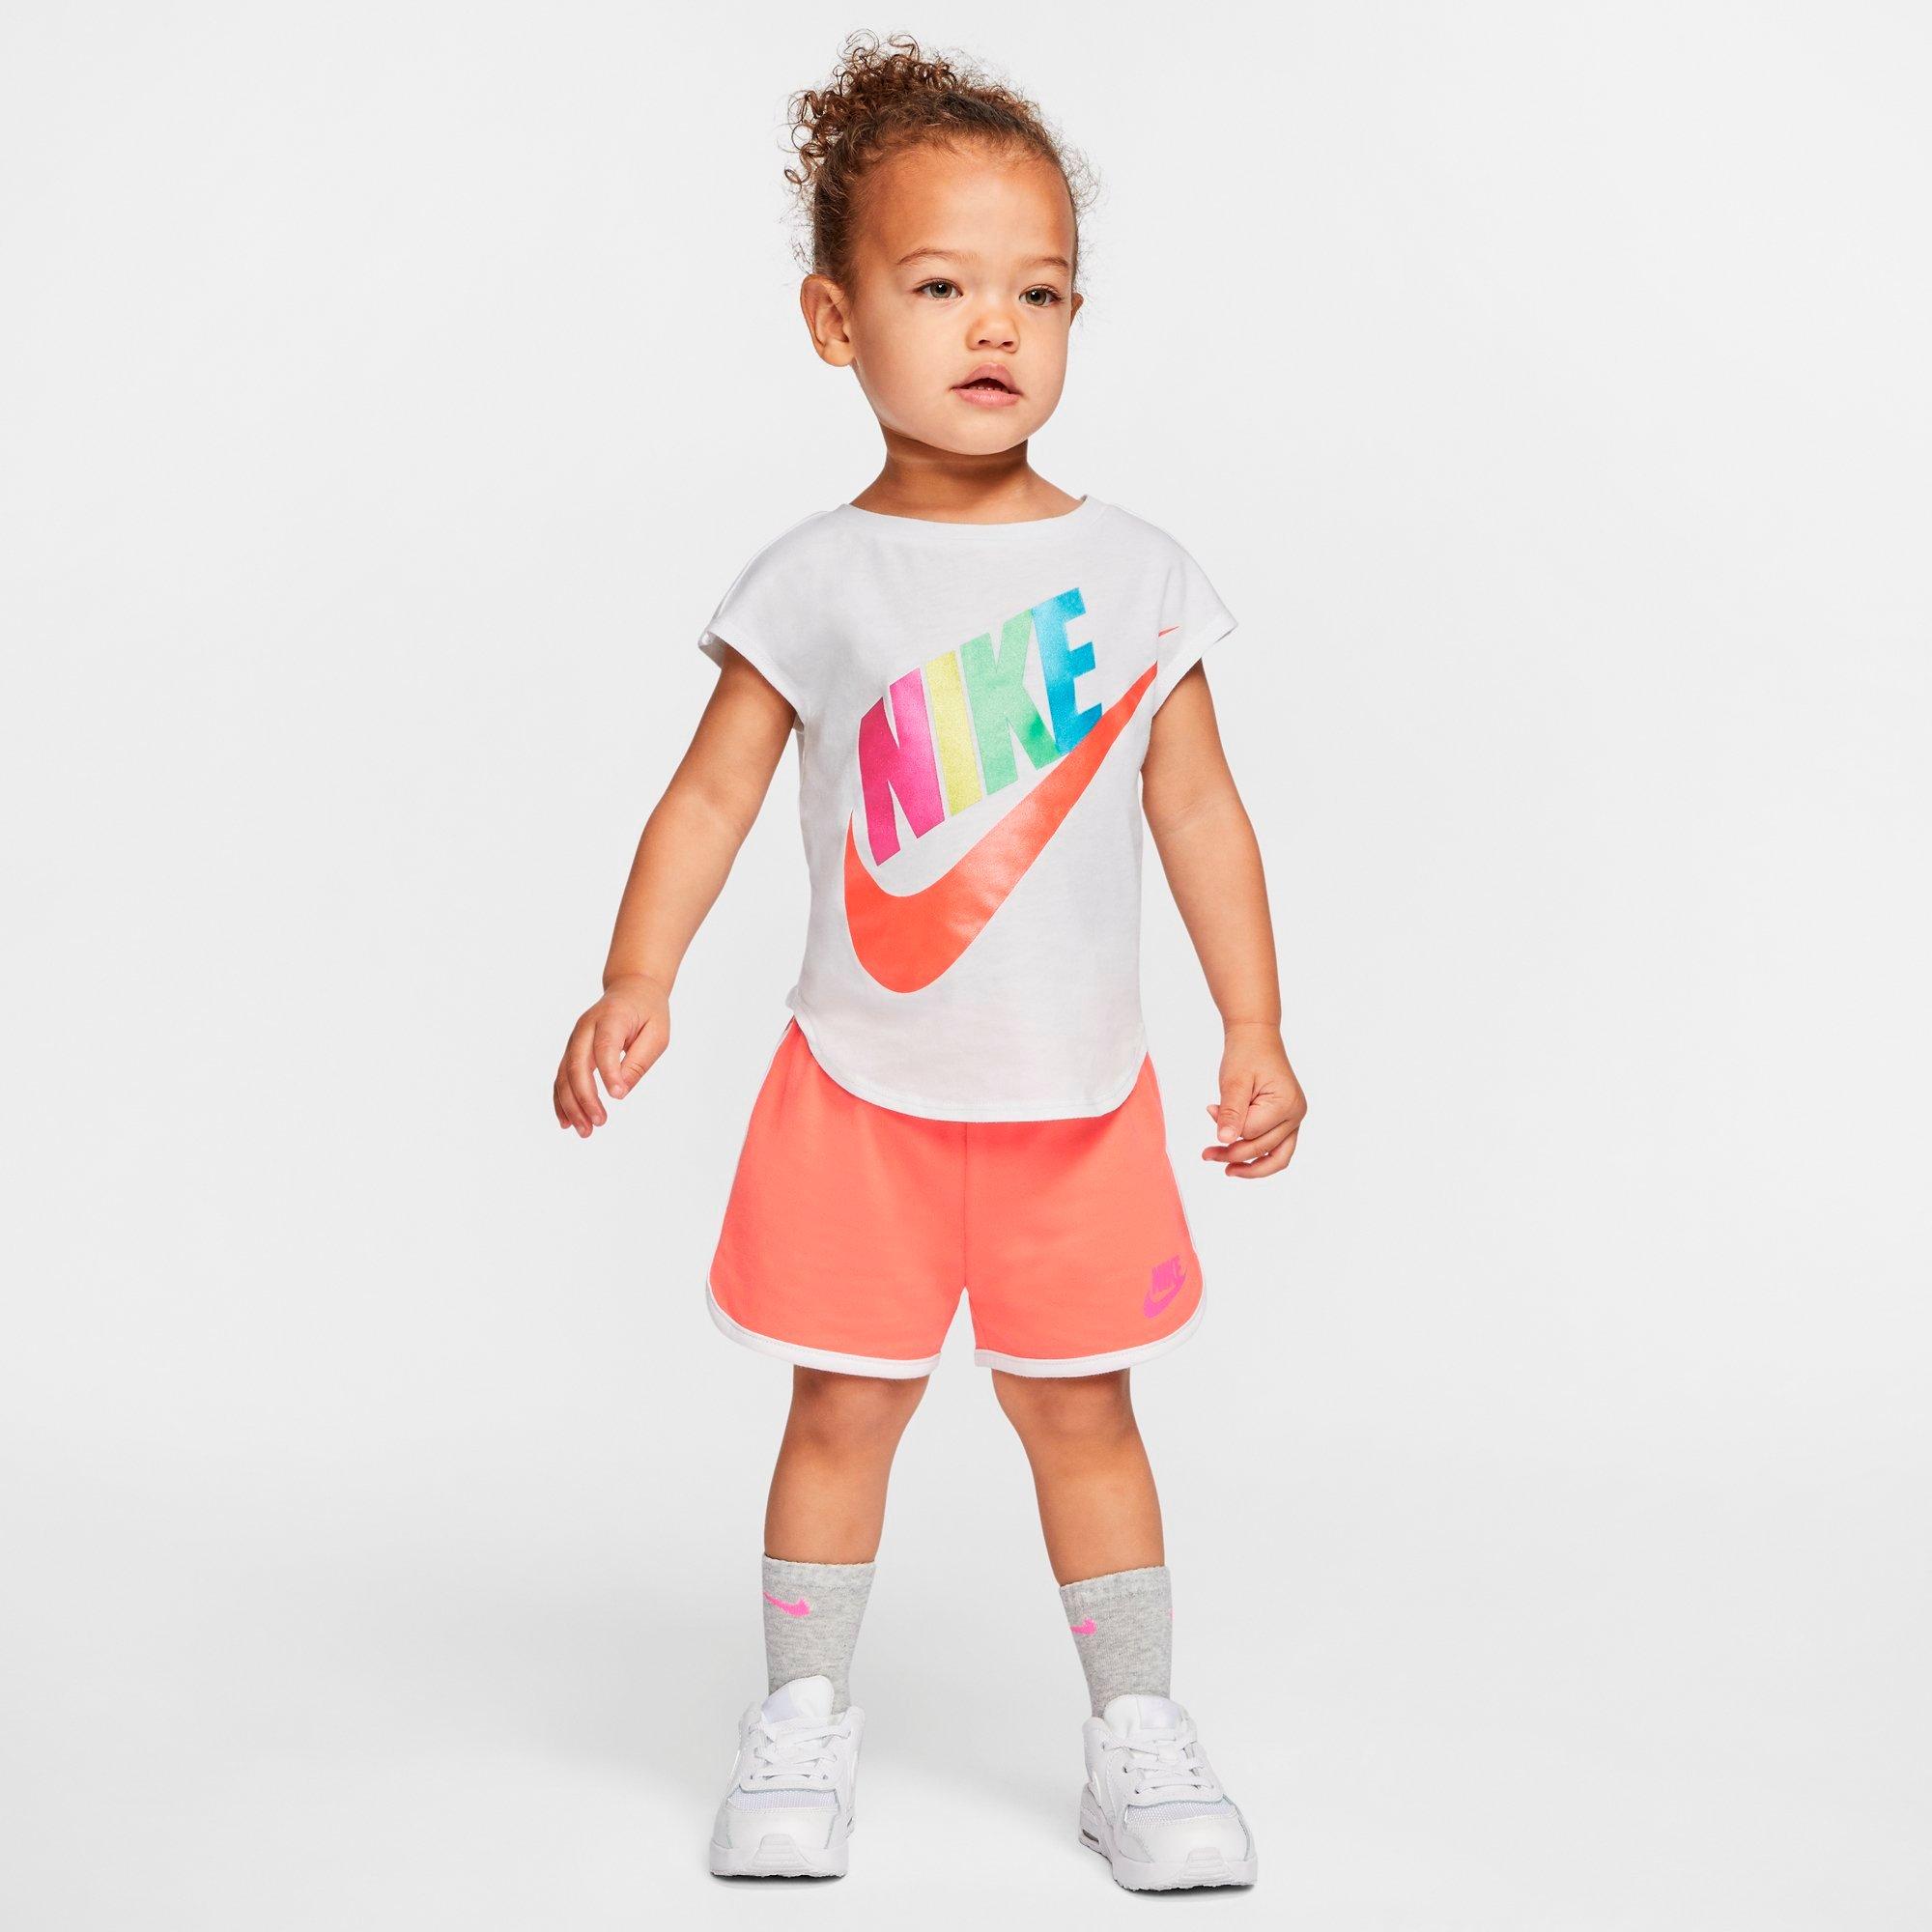 toddler girl nike apparel